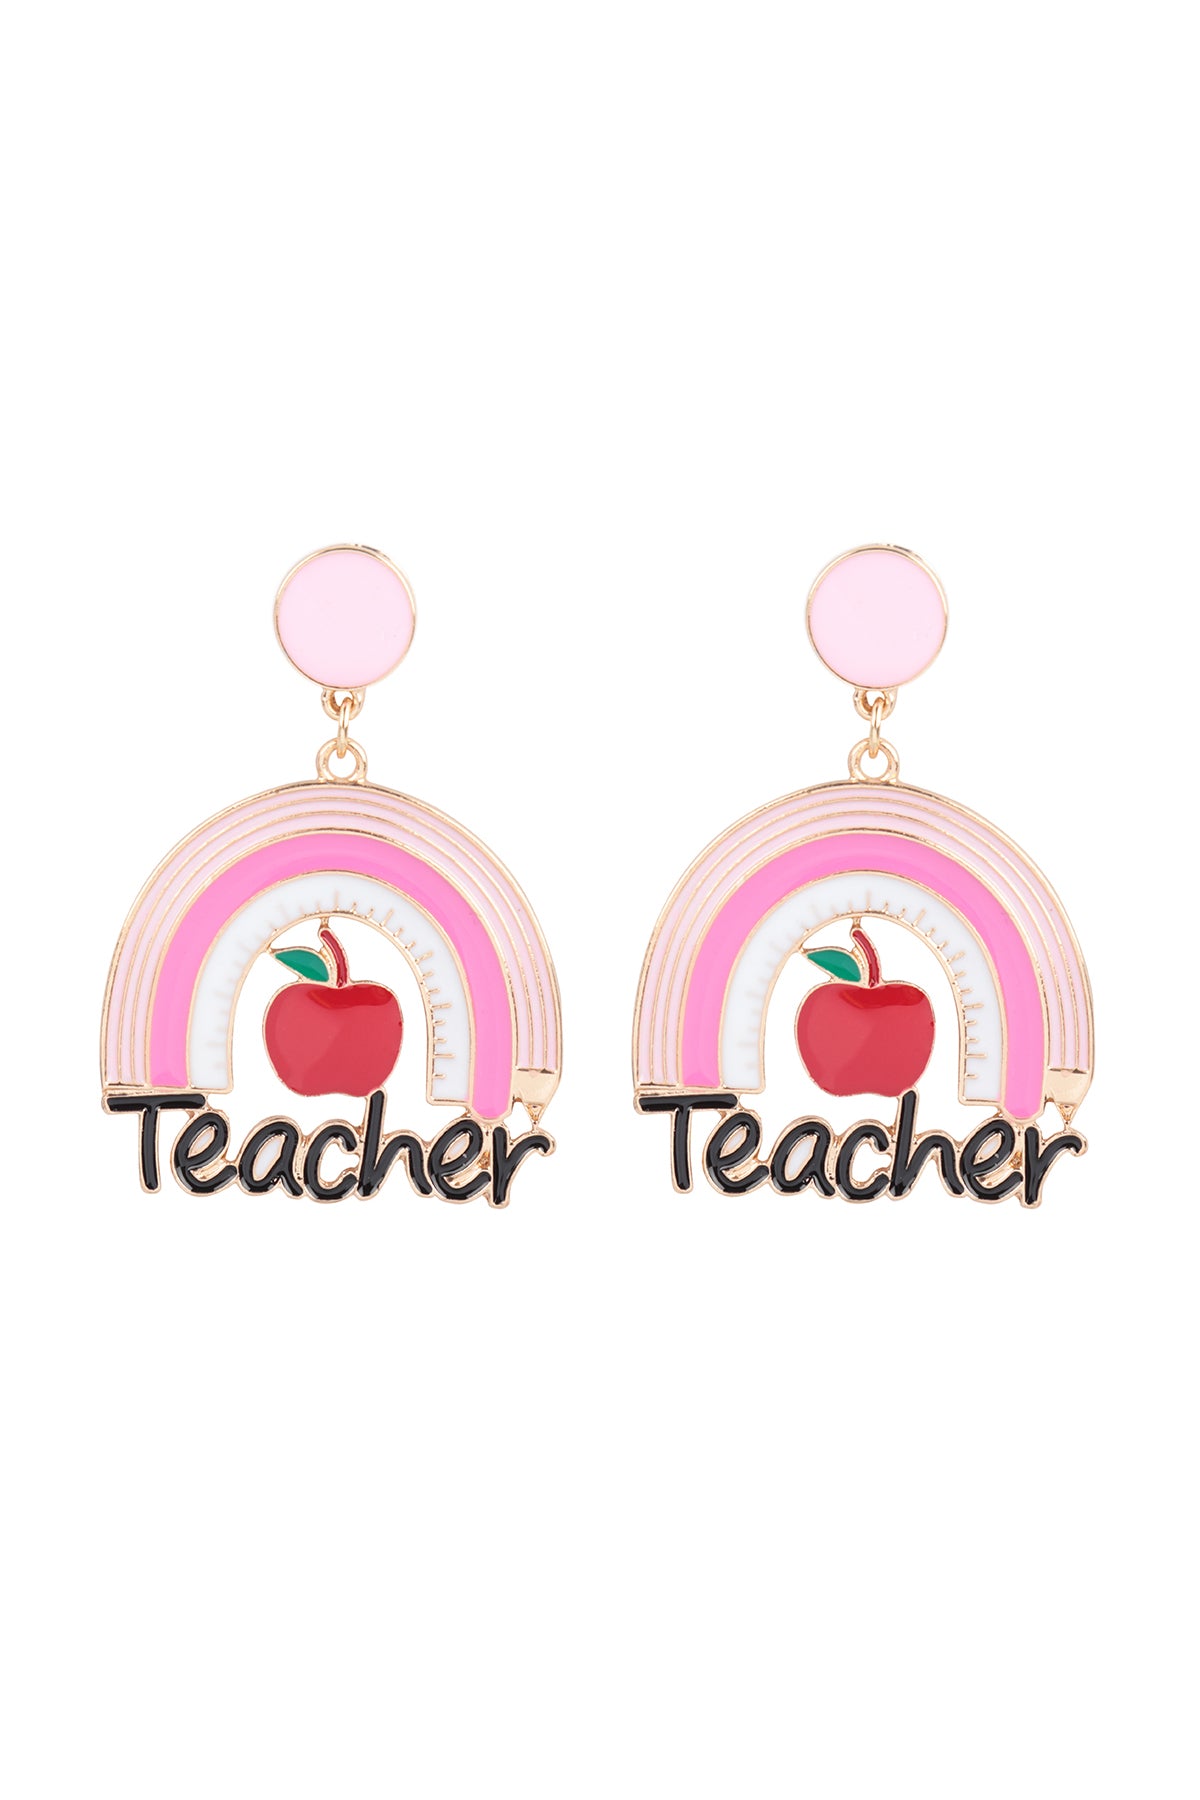 TEACHER'S DAY PENCIL RAINBOW APPLE EARRINGS